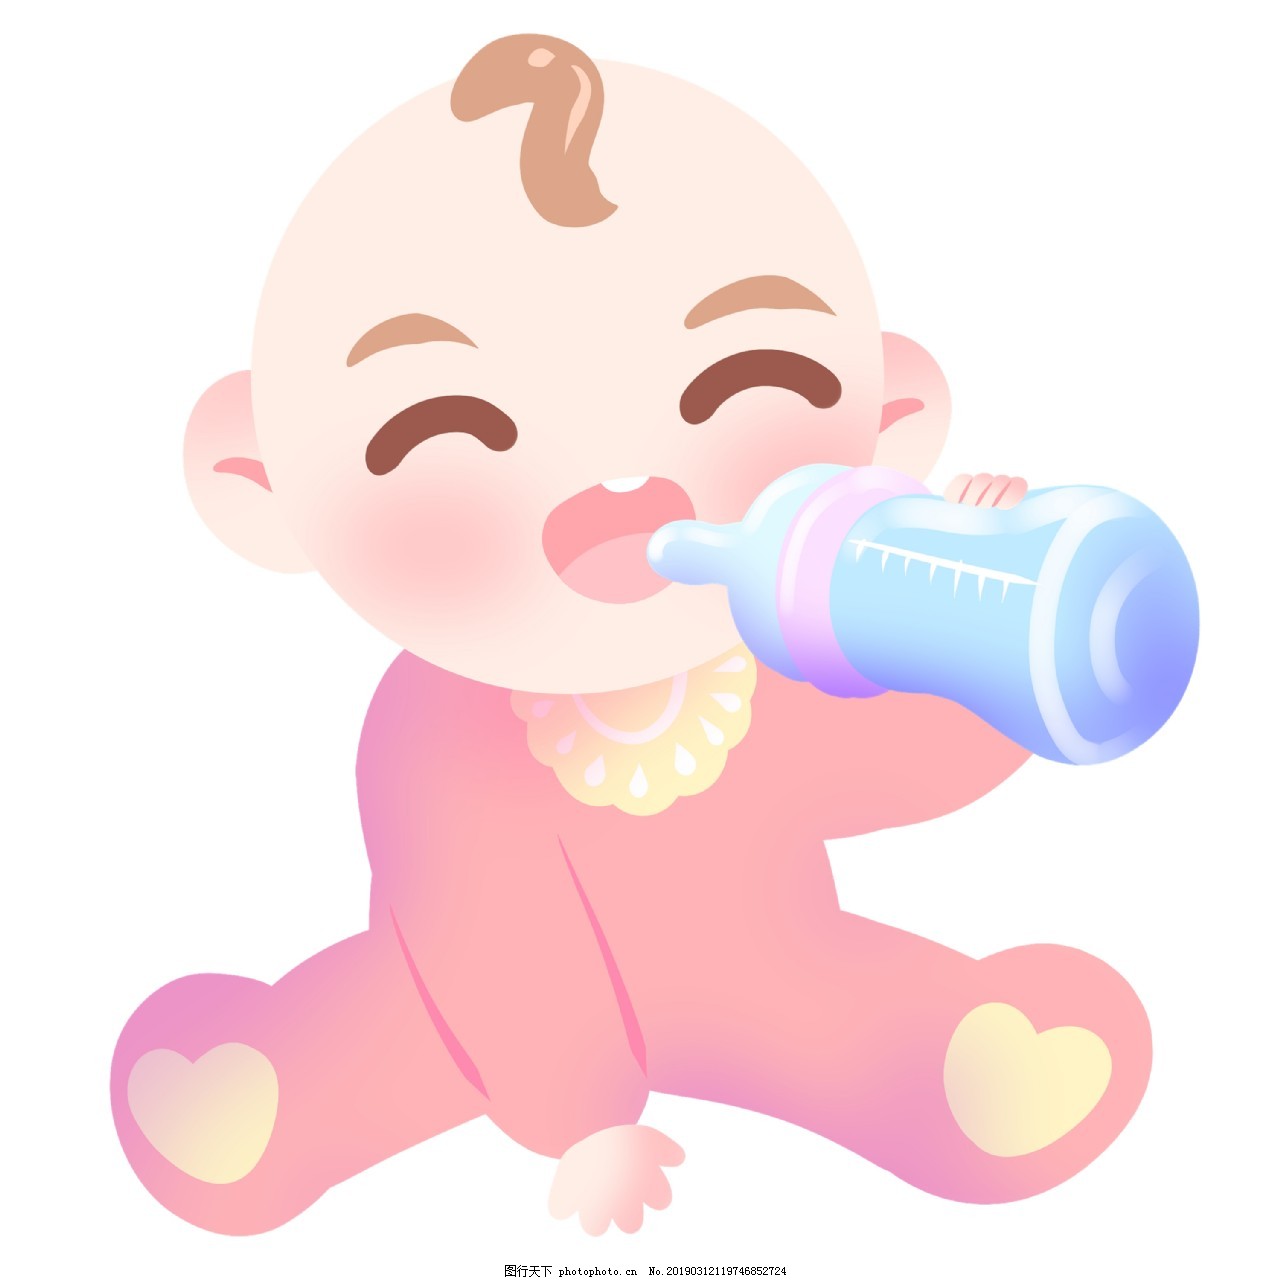 母嬰嬰兒喝奶PSD圖案素材免費下載 - 尺寸2118 × 2118px - 圖形ID401515077 - Lovepik